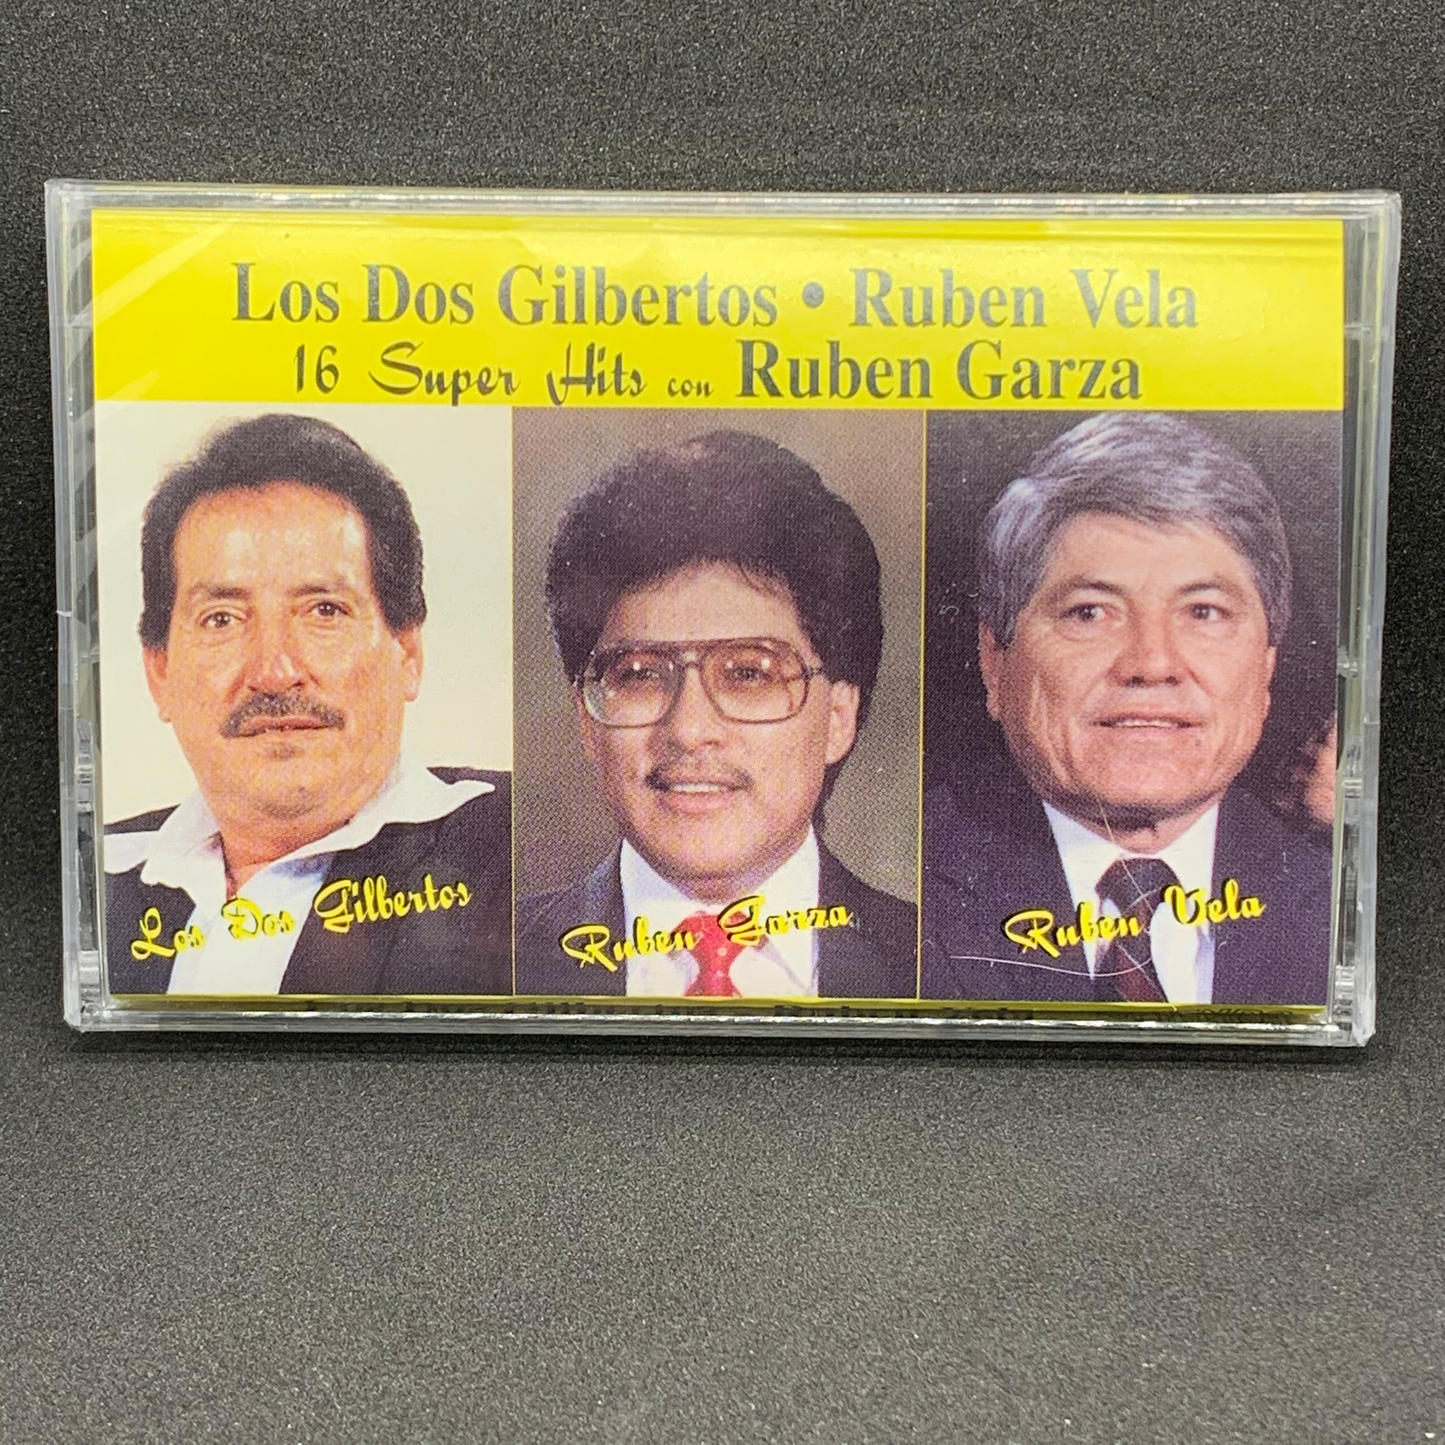 Los Dos Gilbertos | Ruben Vela | Ruben Garza - 16 Super Hits (Cassette)